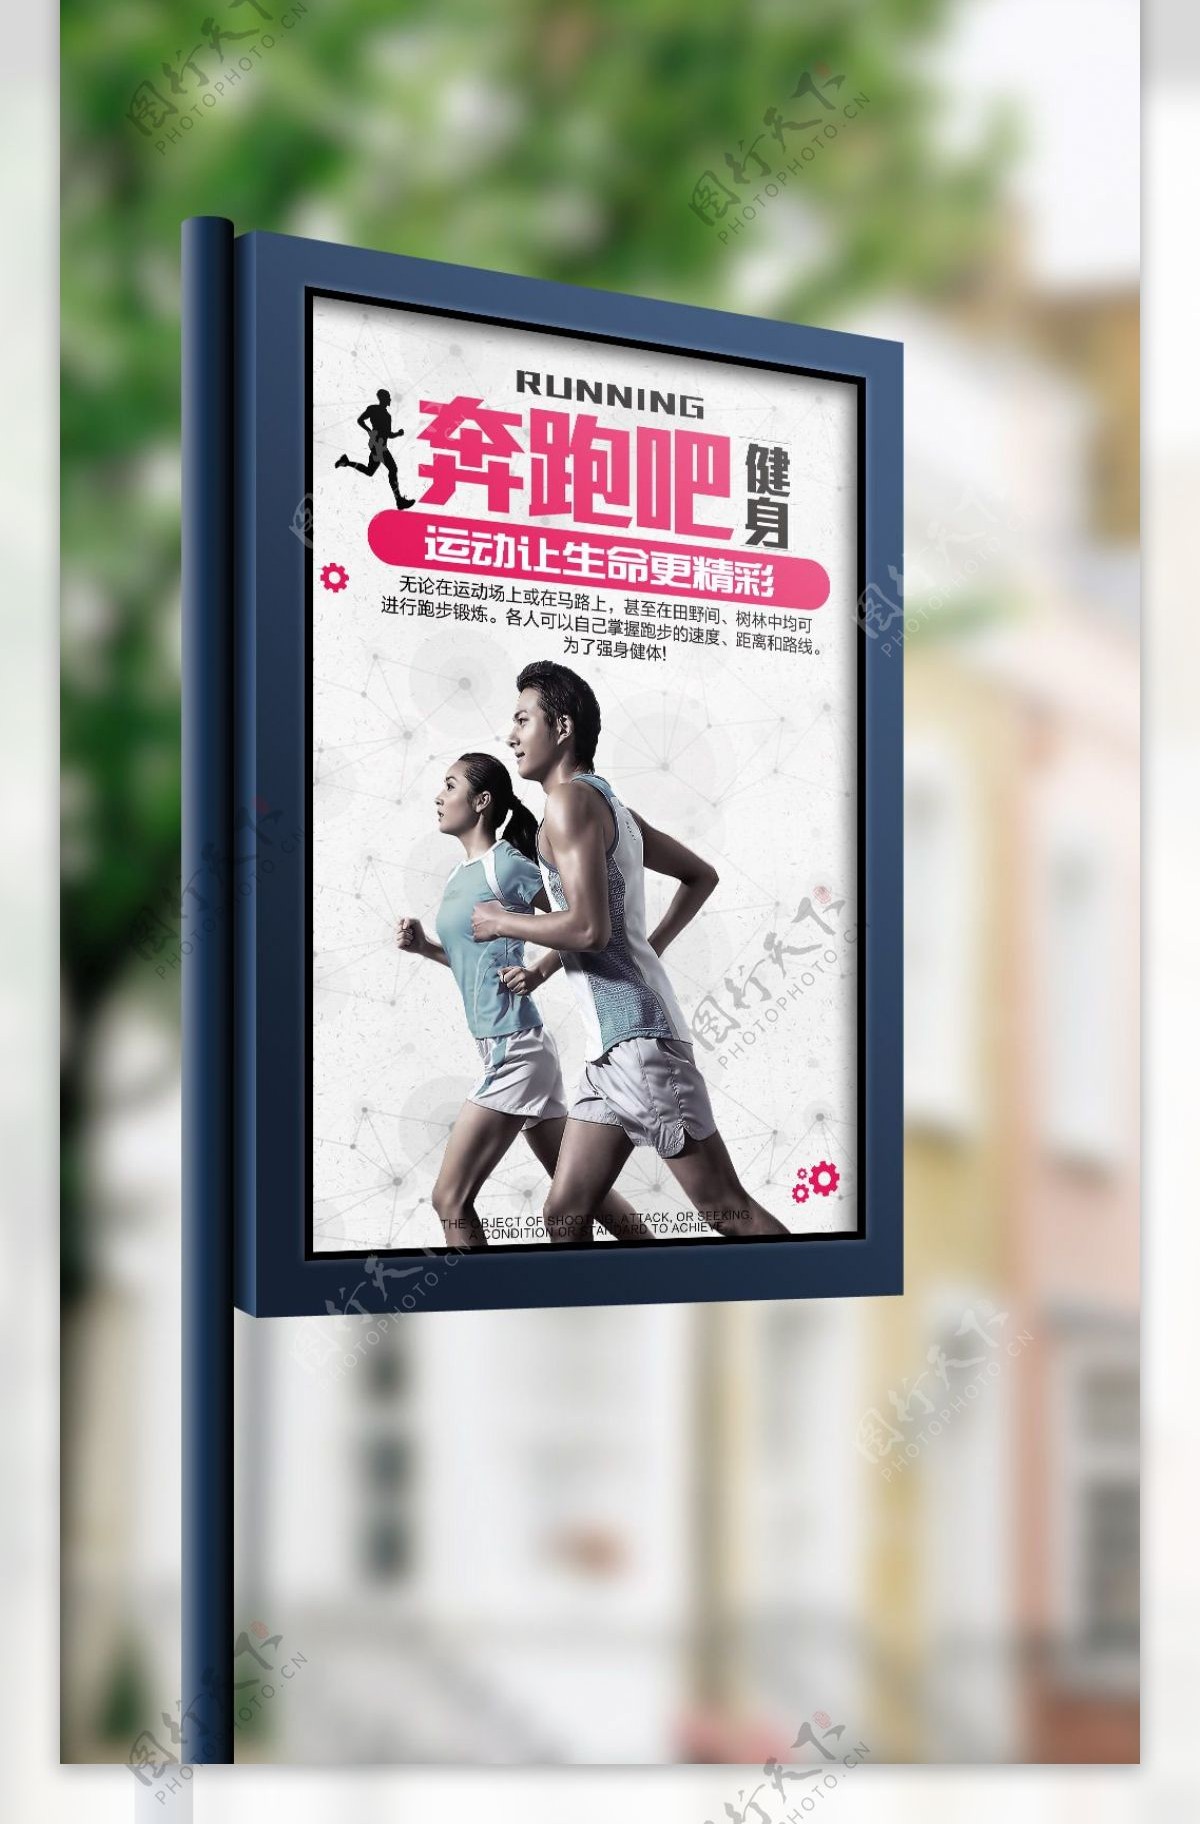 2017年白色简约体育健身运动奔跑吧宣传海报